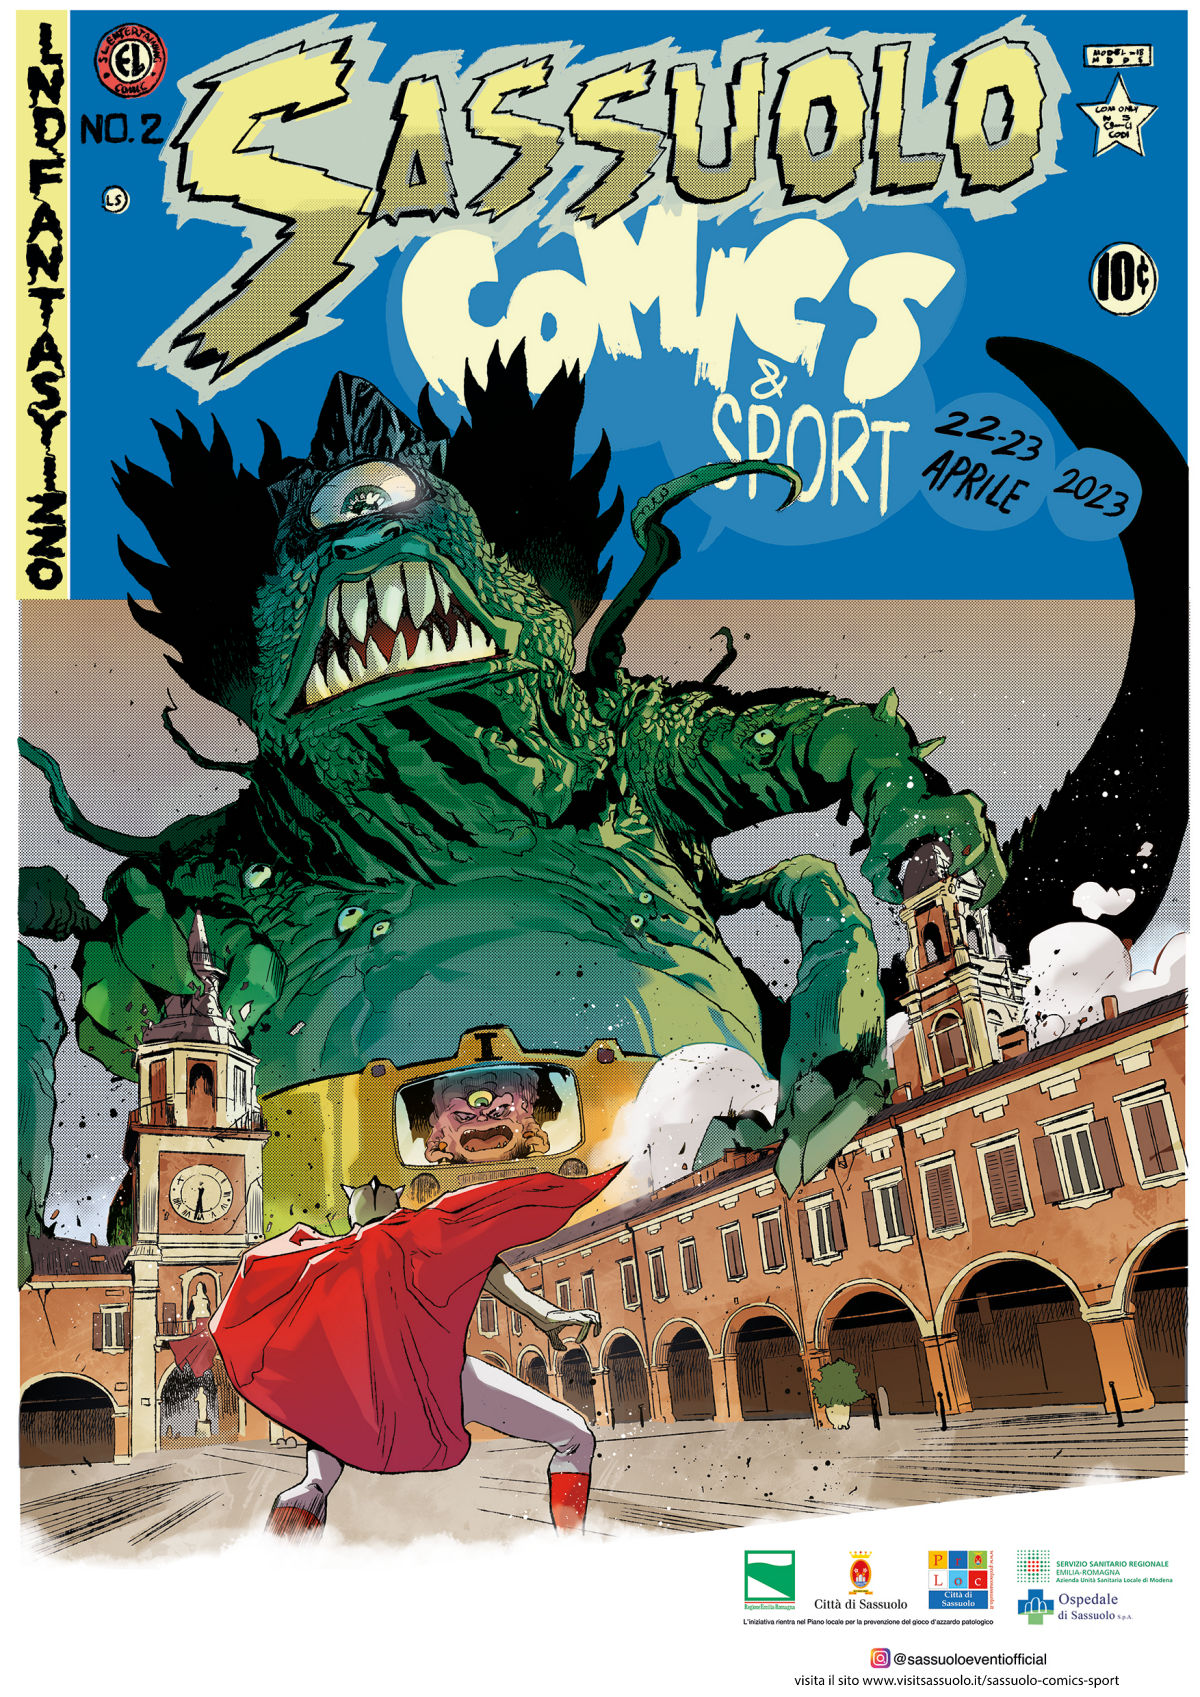 La seconda edizione di Sassuolo Comics & Sport